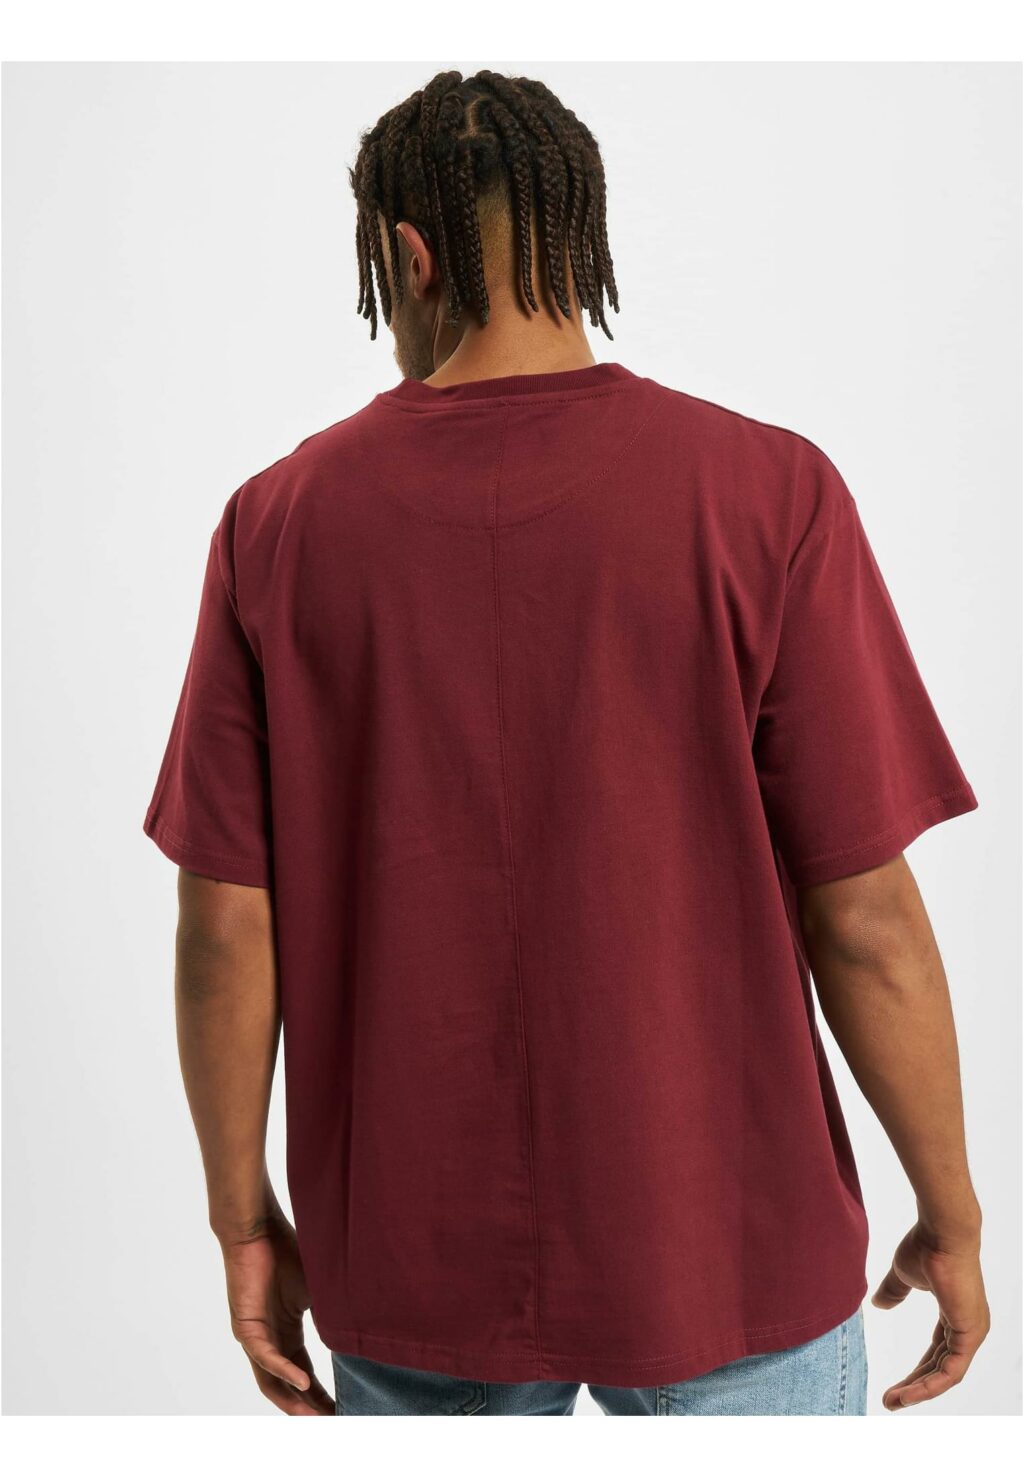 Kizil T-Shirt burgundy JRTS676